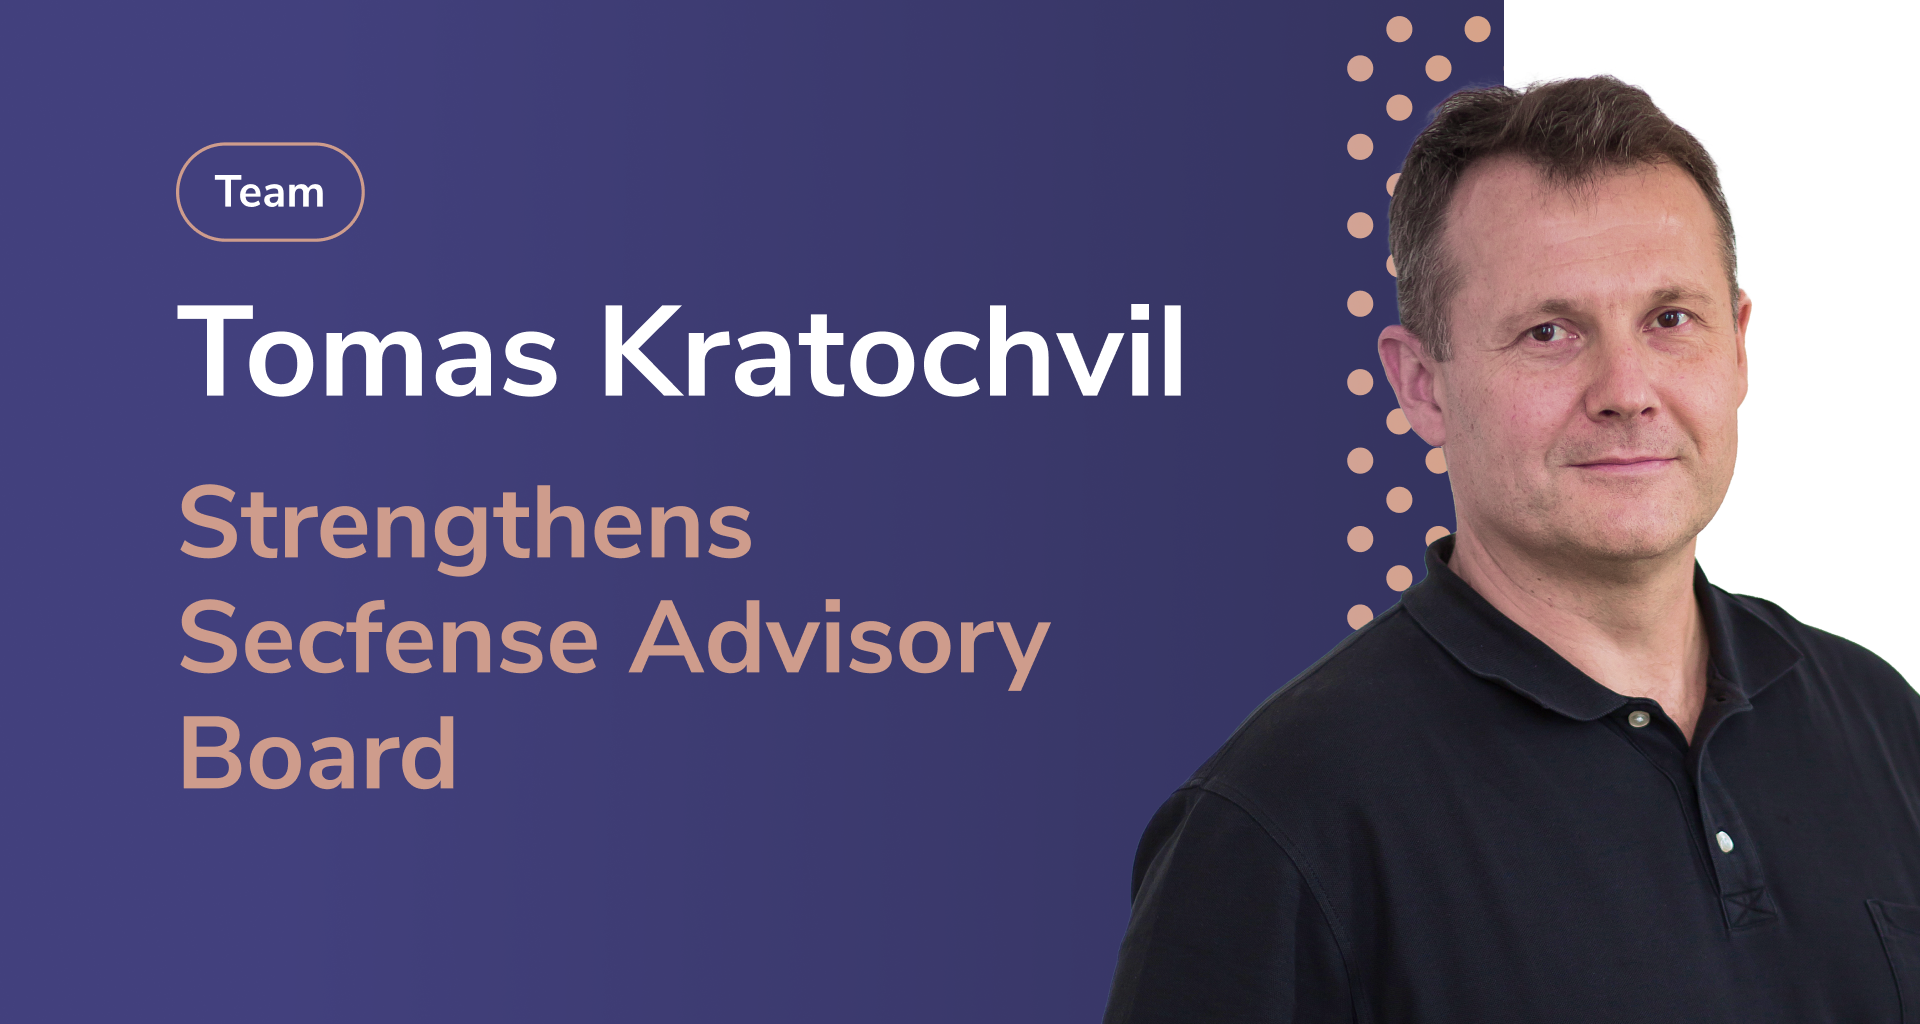 Tomas kratochvil strengthens secfense advisory board.